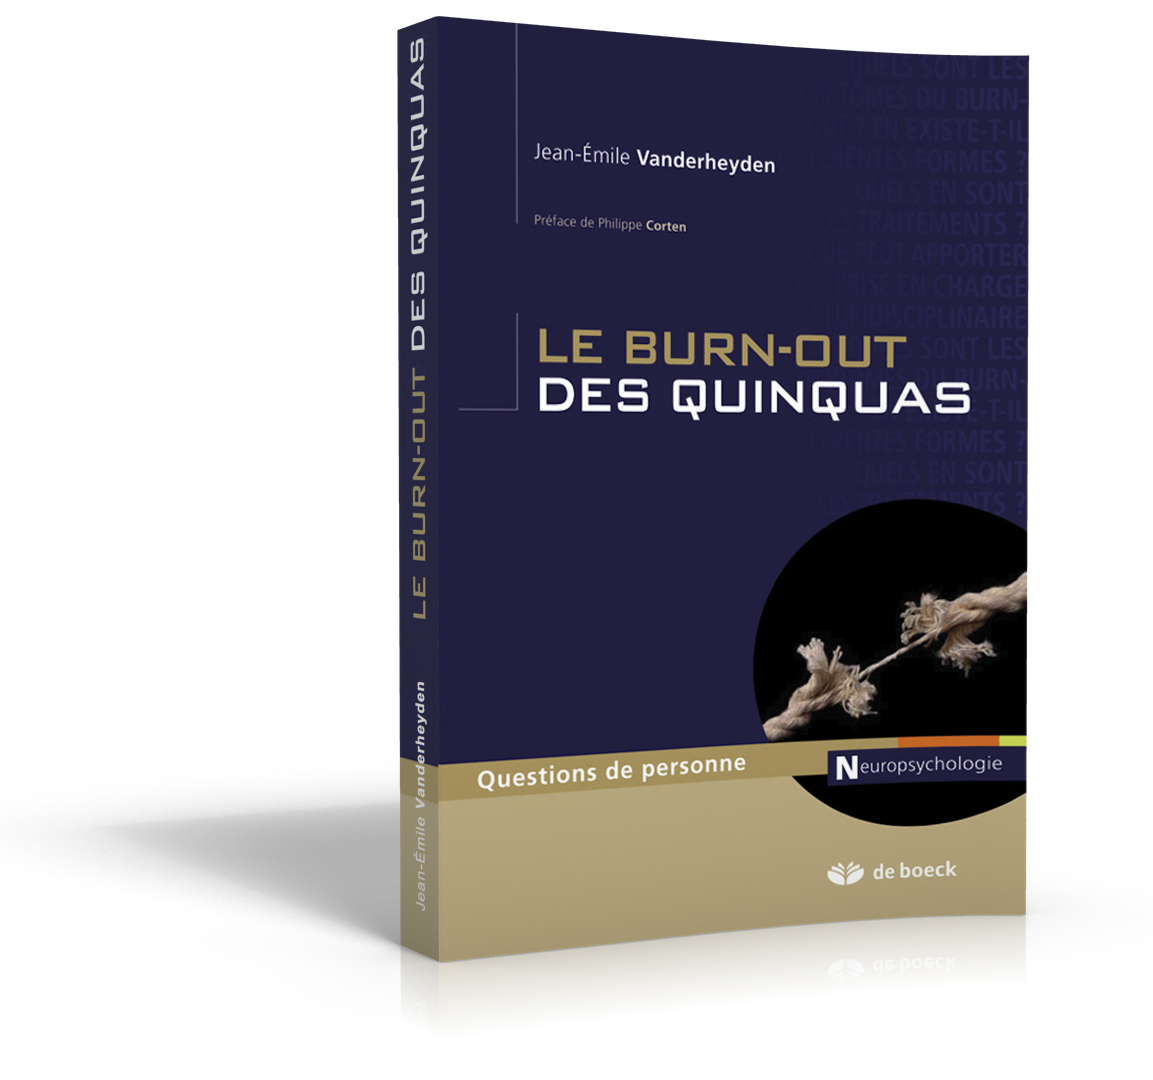 LivRe-quinquas-3D